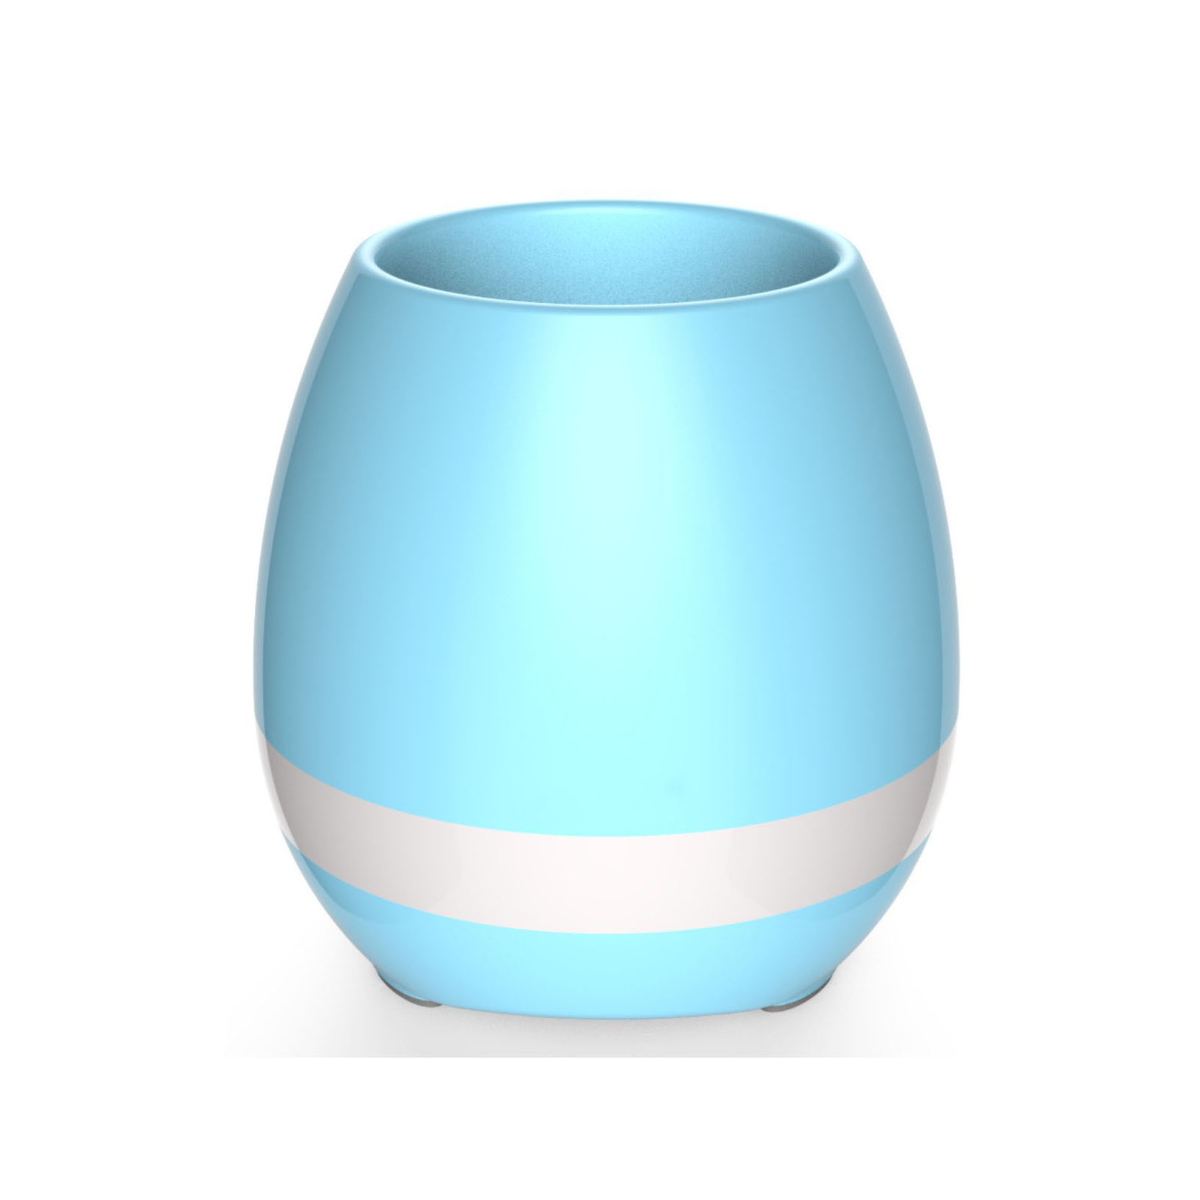 ENBAOXIN Blumentopf, Nachtlicht Bluetooth Bluetooth-Lautsprecher, Modus Blau Farben Musik 7 Lautsprecher-Smart